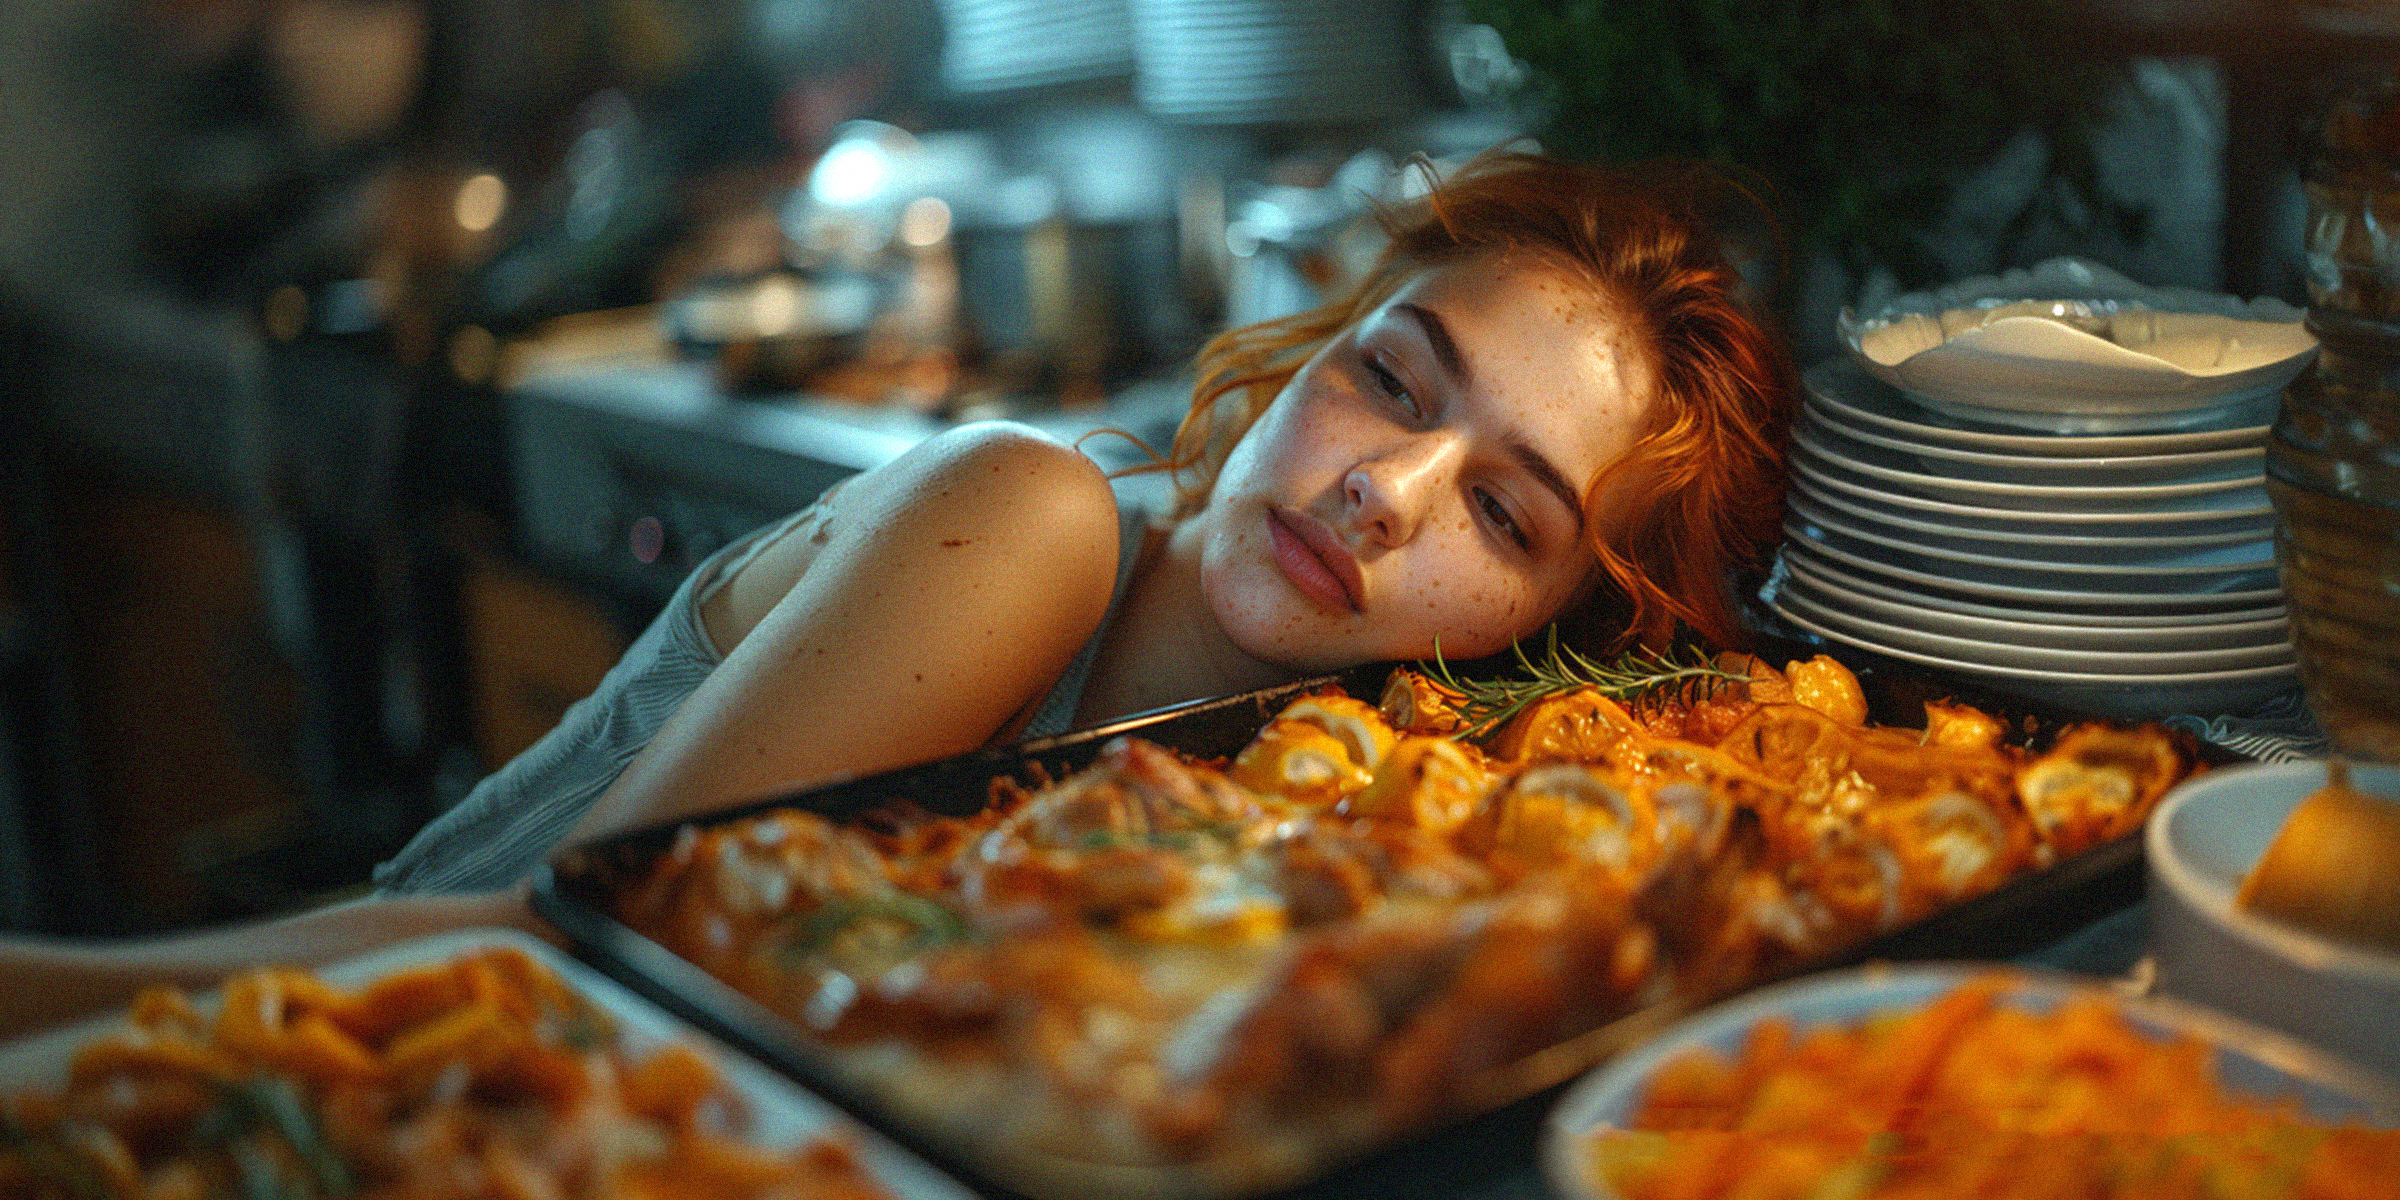 Une jeune femme reposant sa tête sur une table avec de la nourriture et des assiettes | Source : Midjourney